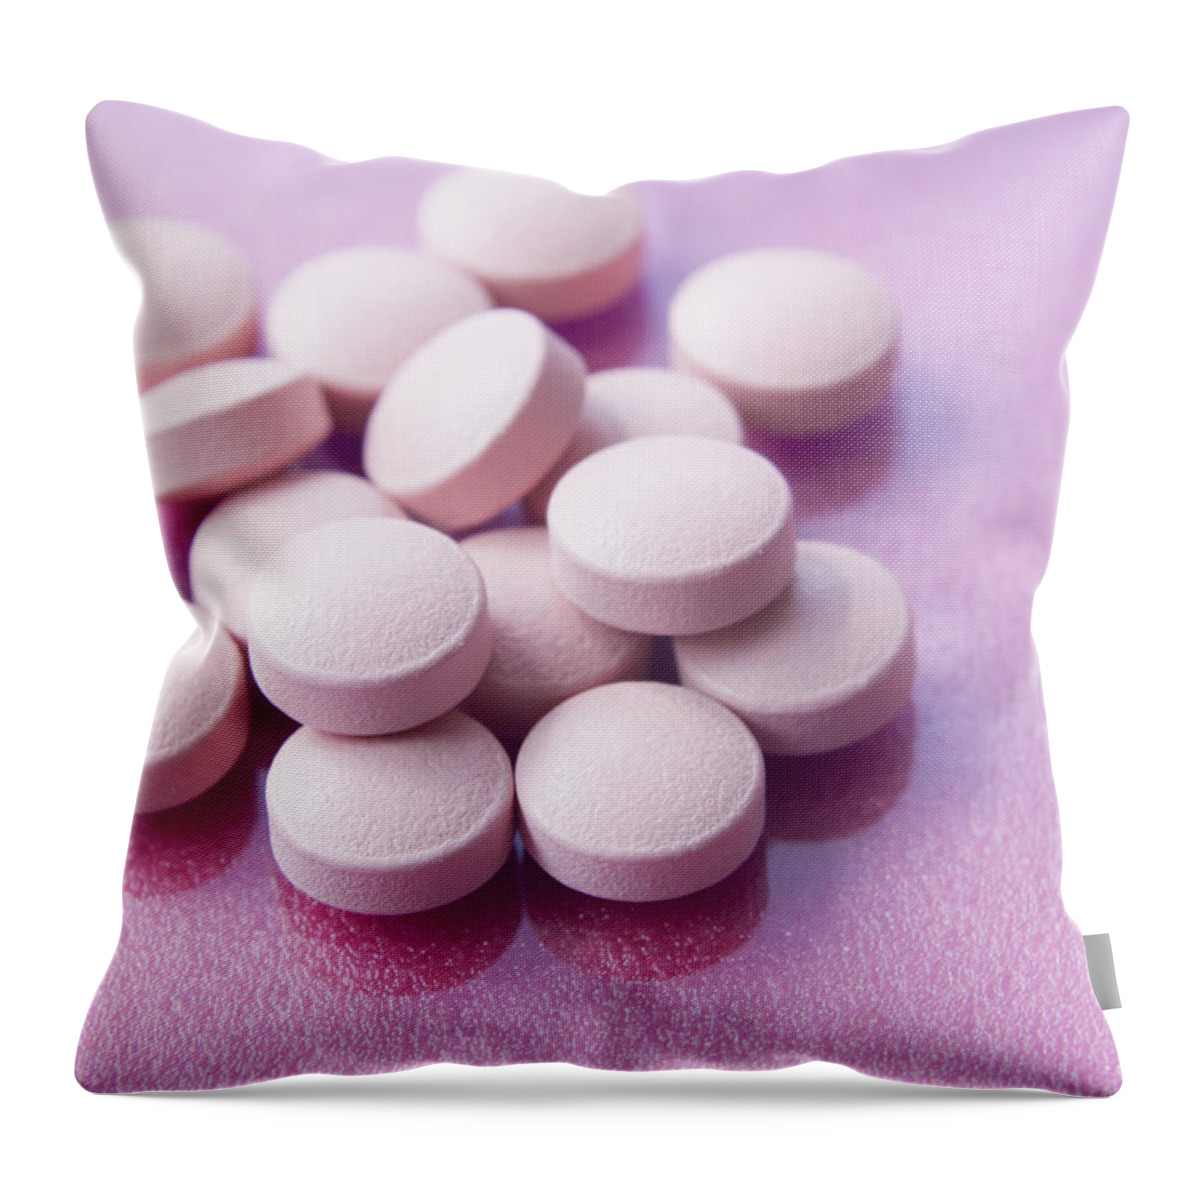 Heap Throw Pillow featuring the photograph Pills by Imagenavi